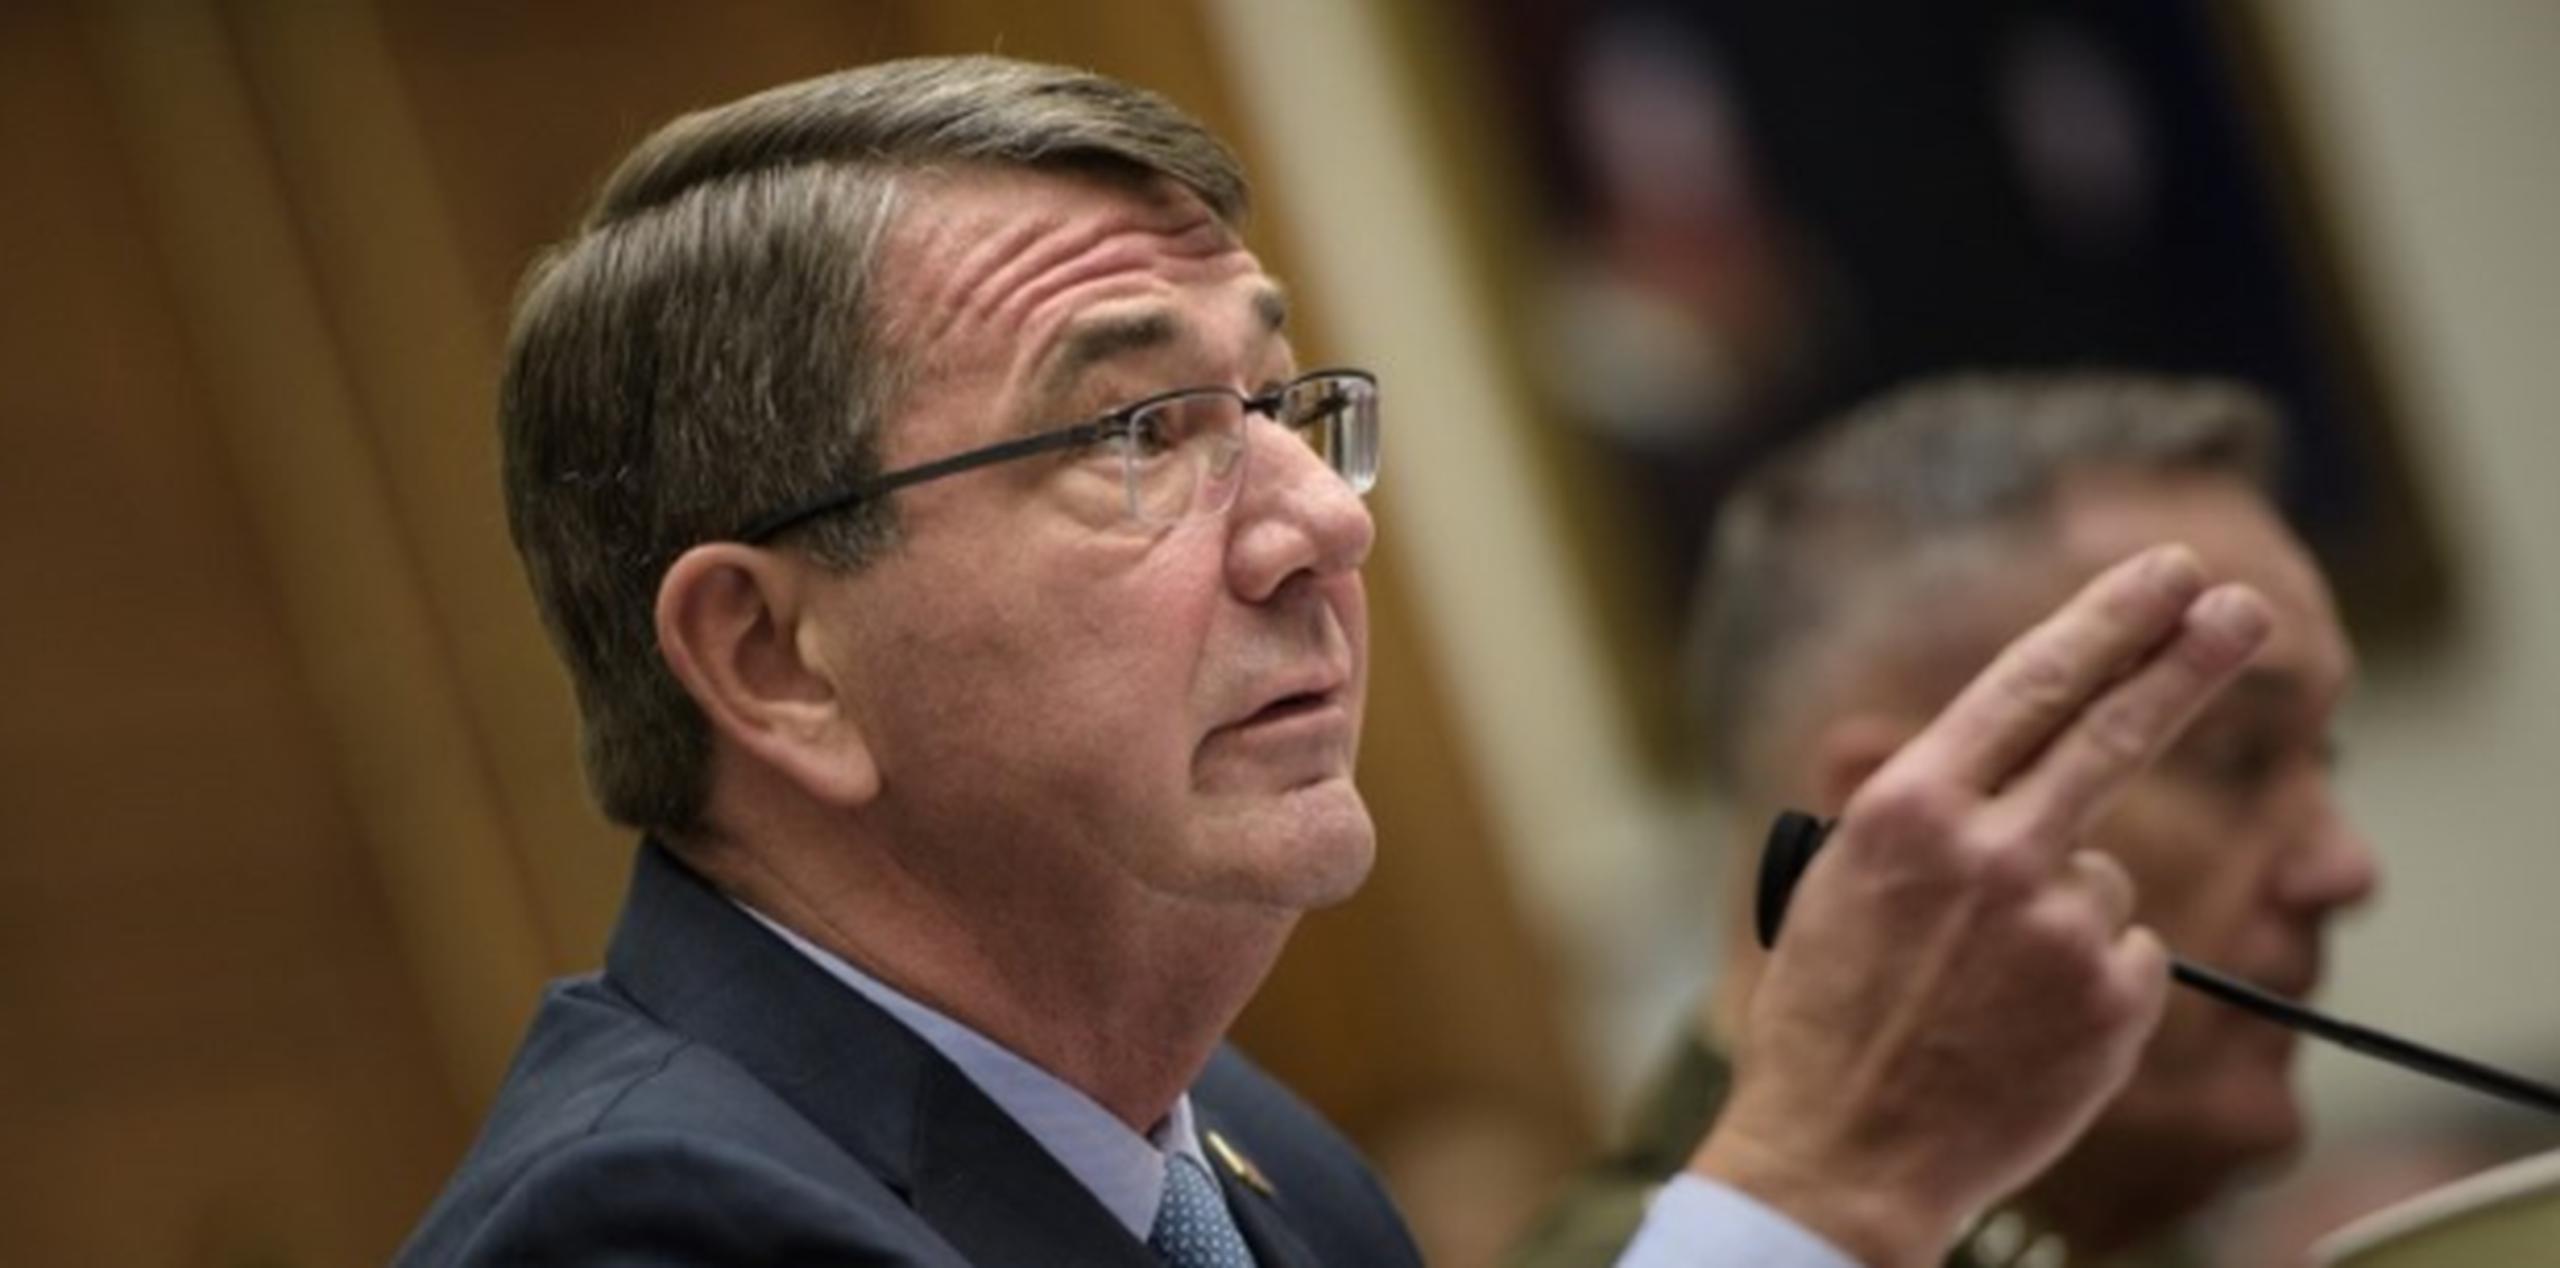 Al deponer ante el Comité de Servicios Armados de la Cámara del Congreso, Carter dijo que el mundo  "tiene que incrementar" sus esfuerzos contra los yihadistas. (AFP)